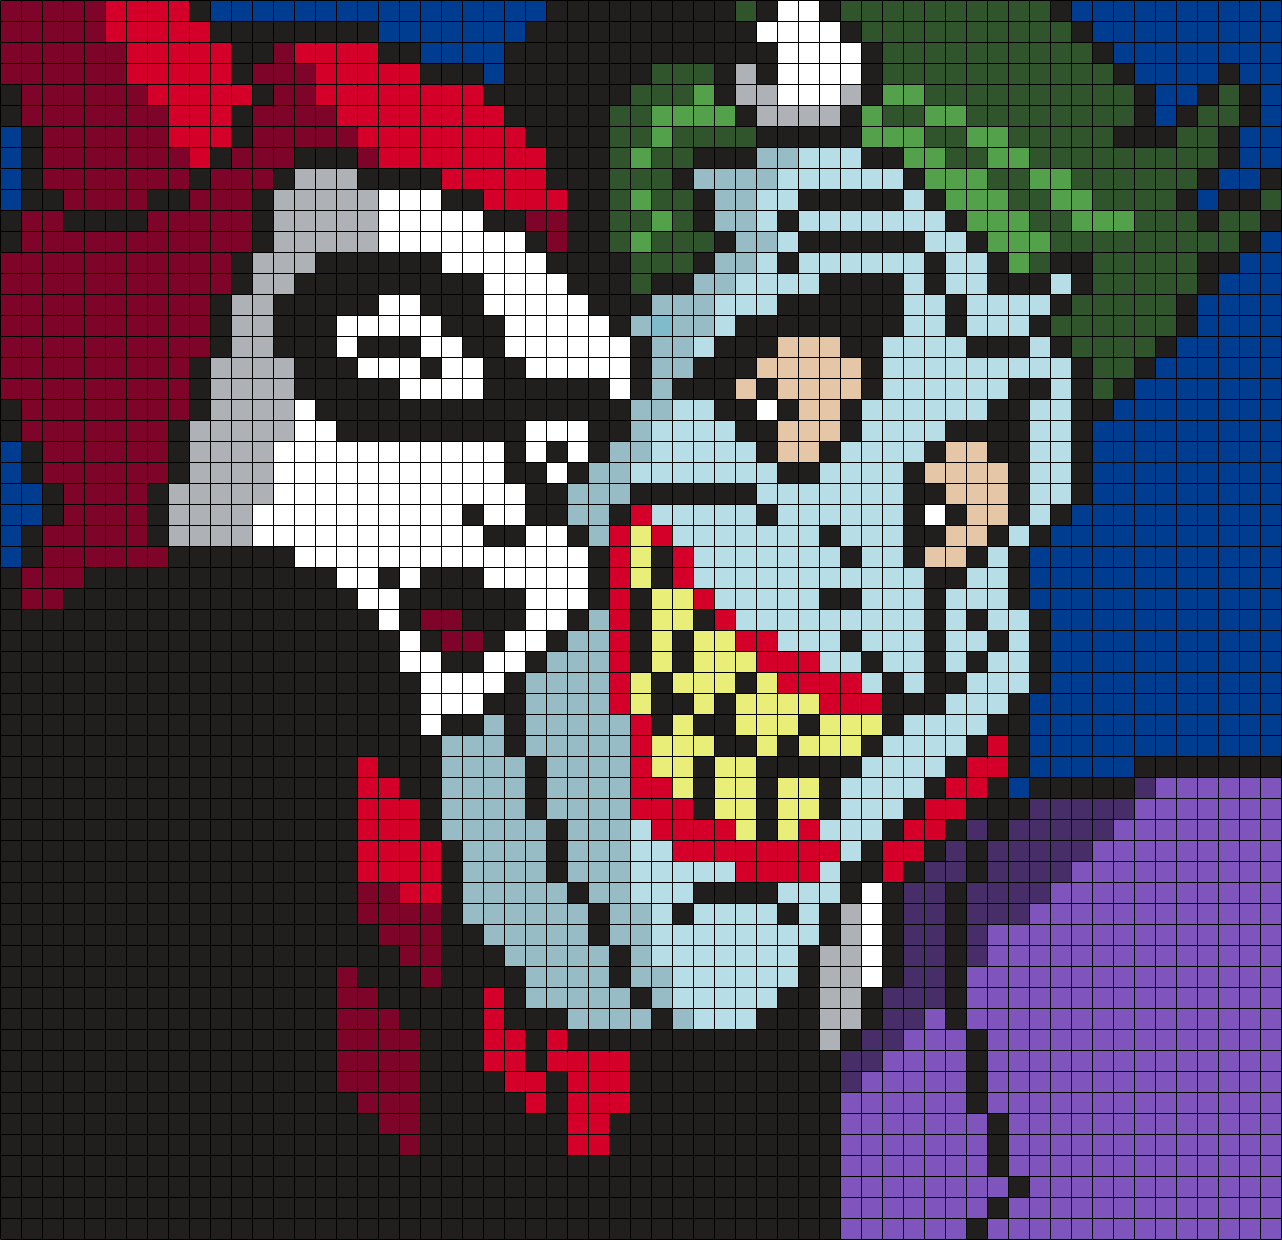 Harley Quinn And The Joker Selfie (Square)